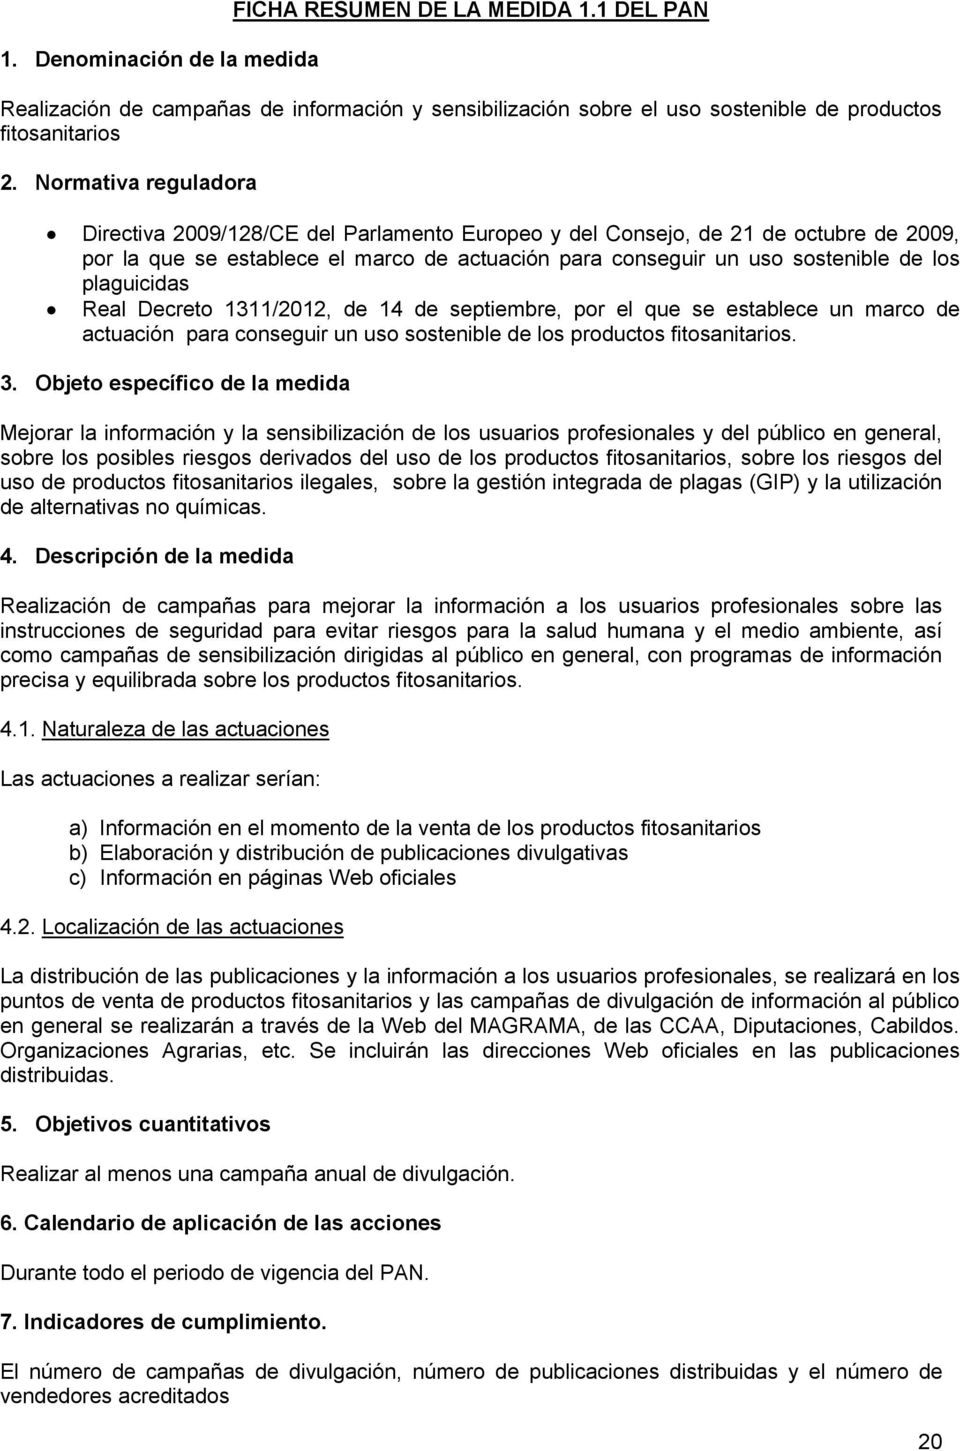 plaguicidas Real Decreto 1311/2012, de 14 de septiembre, por el que se establece un marco de actuación para conseguir un uso sostenible de los productos fitosanitarios. 3.